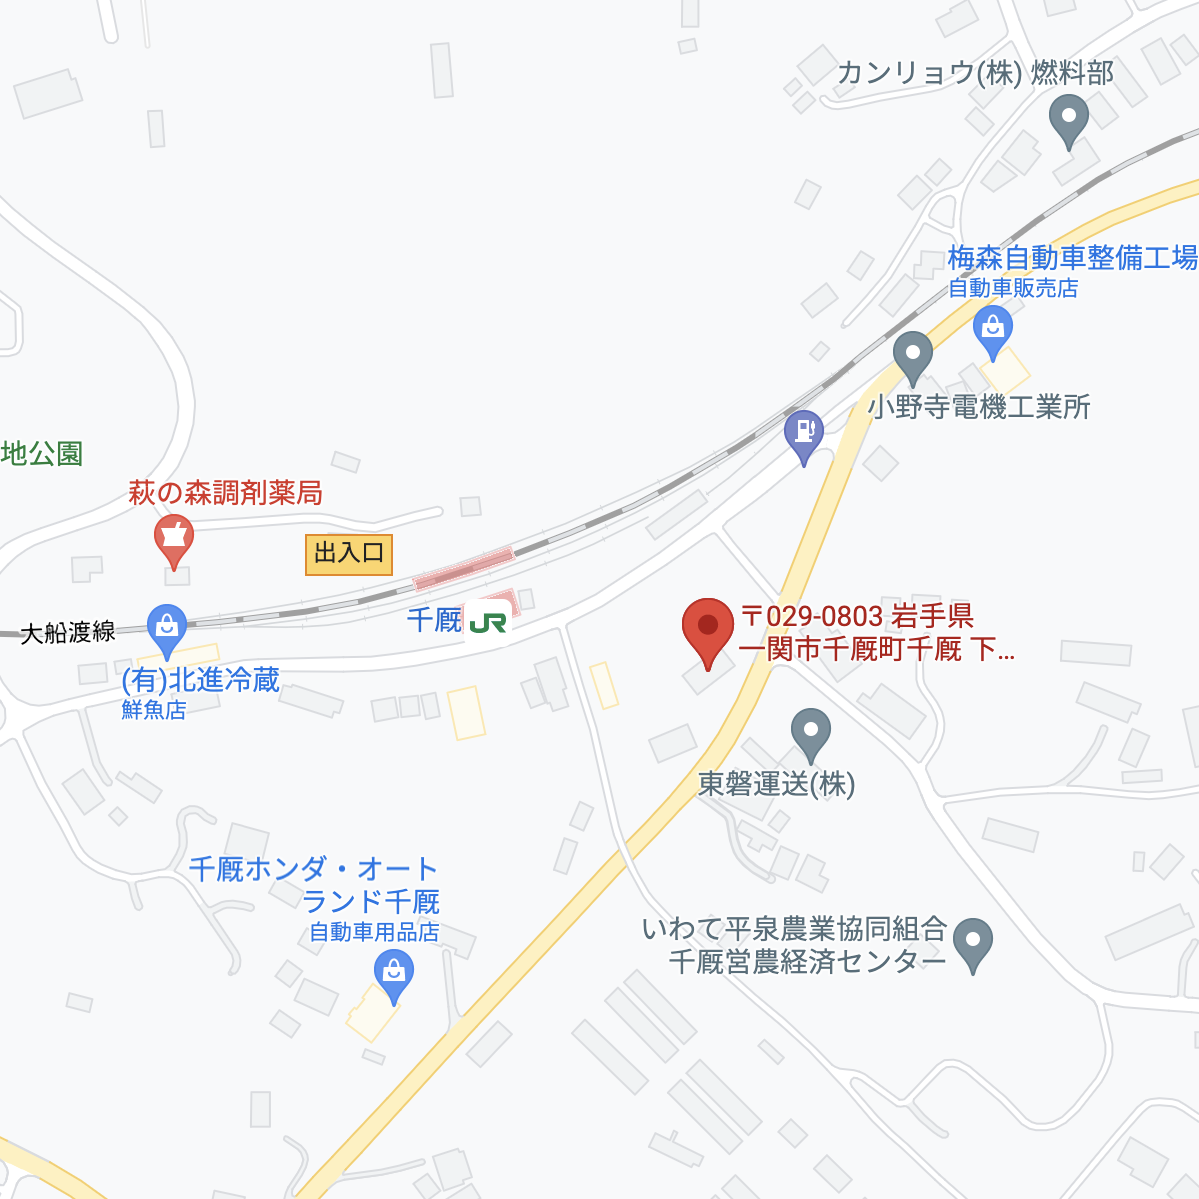 東磐運送株式会社 Googleマップ